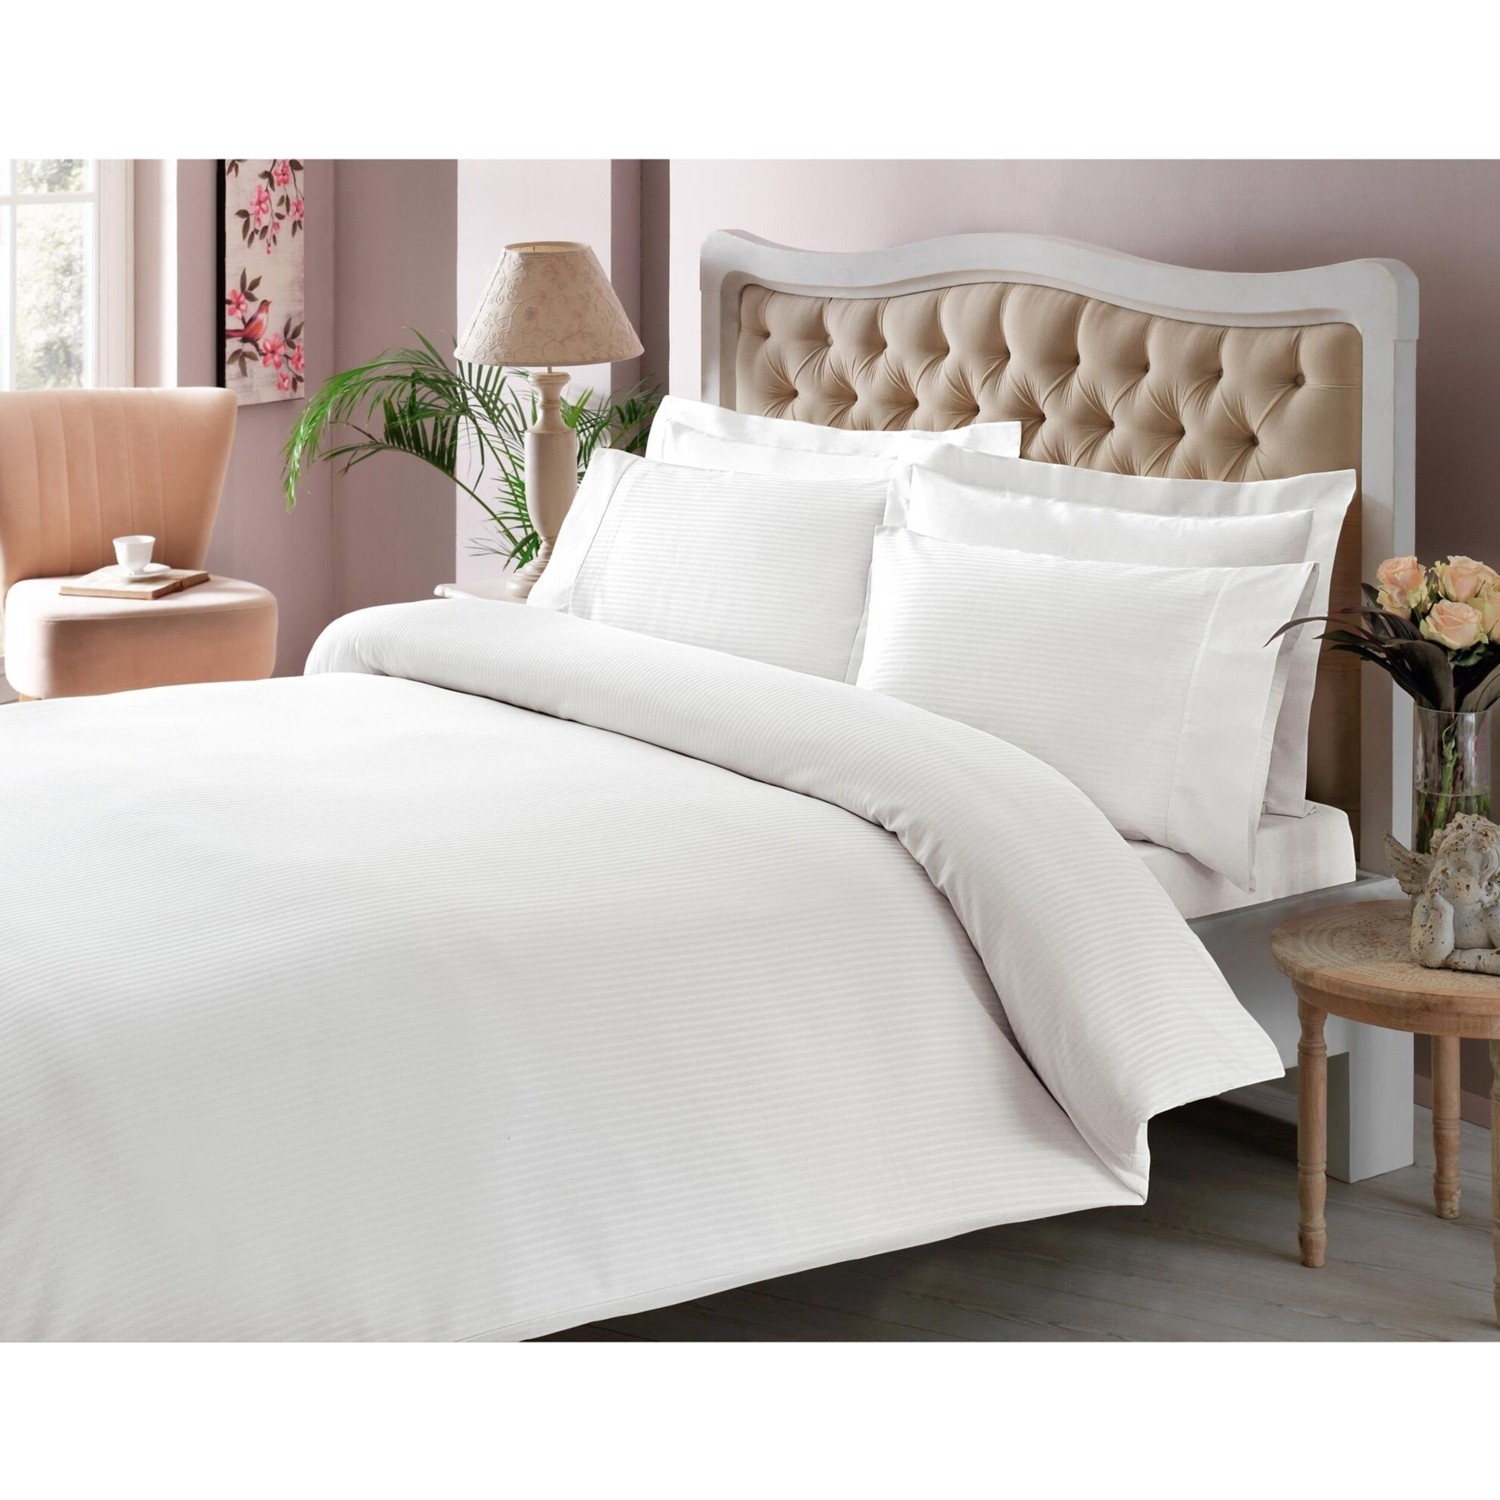 Комплект постельного белья Tac Stripe Premium Basic, белый комплект постельного белья tac premium basic stripe кремового цвета